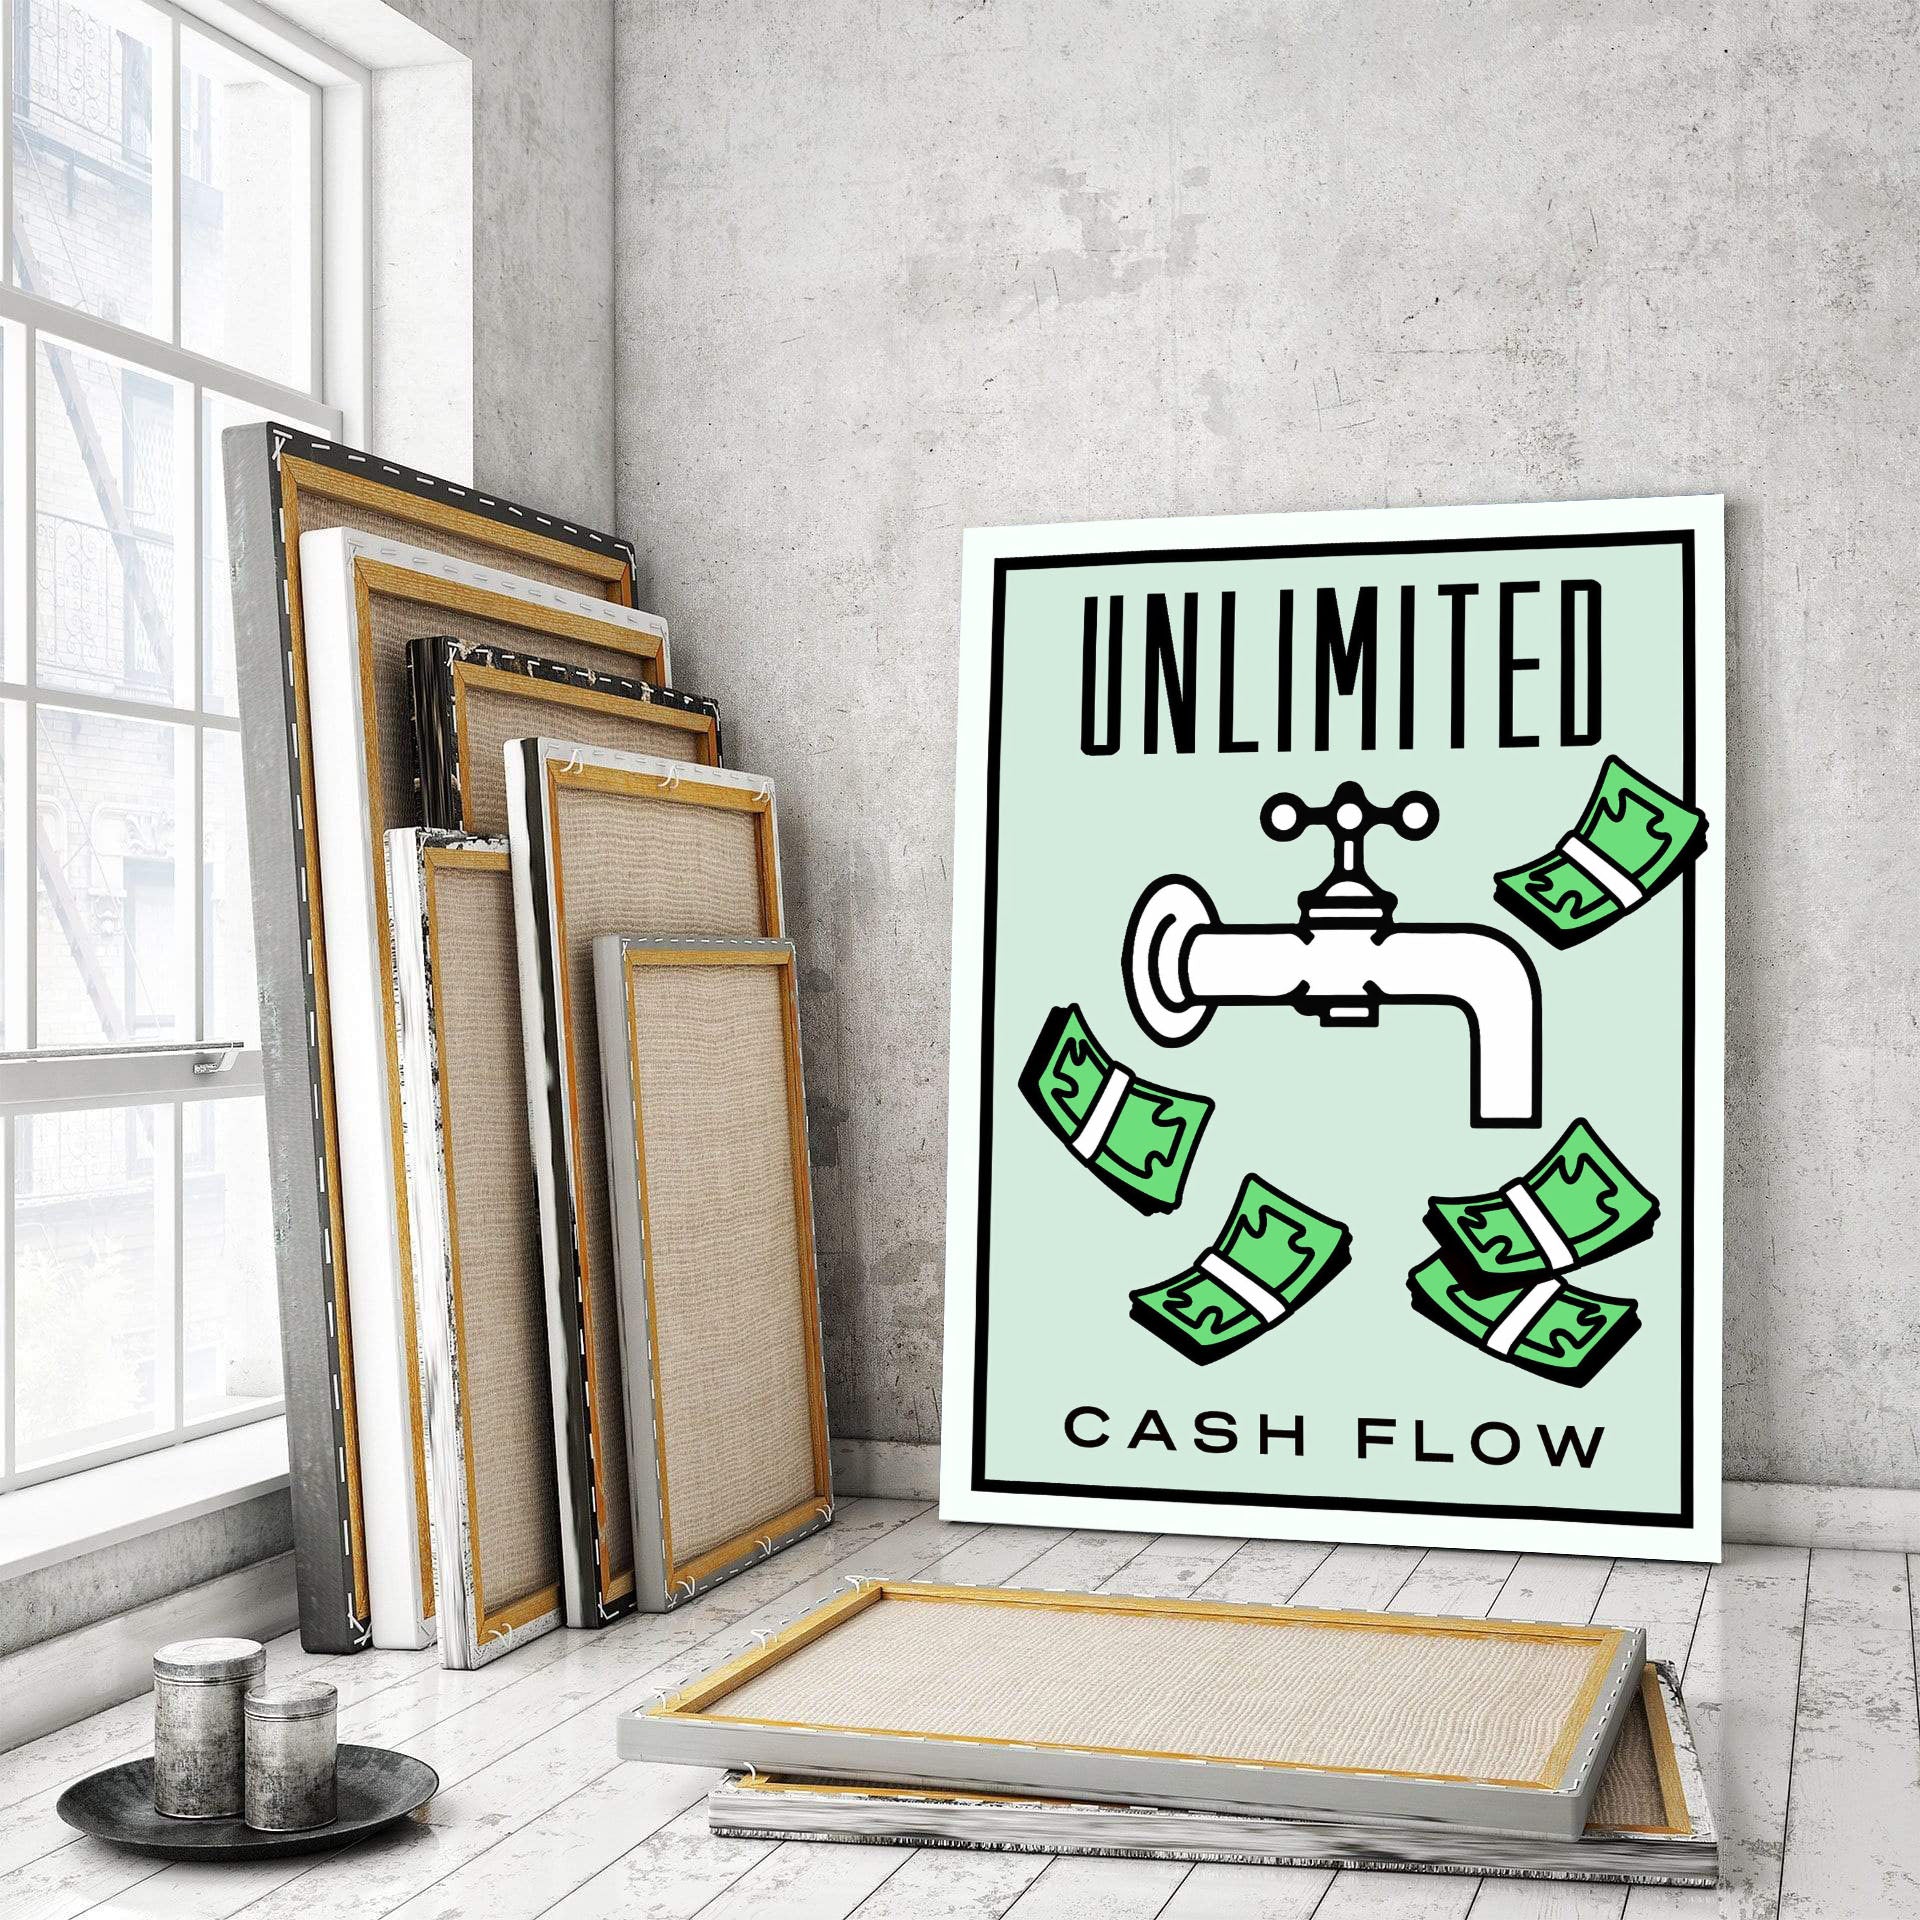 Unlimited Cash Flow